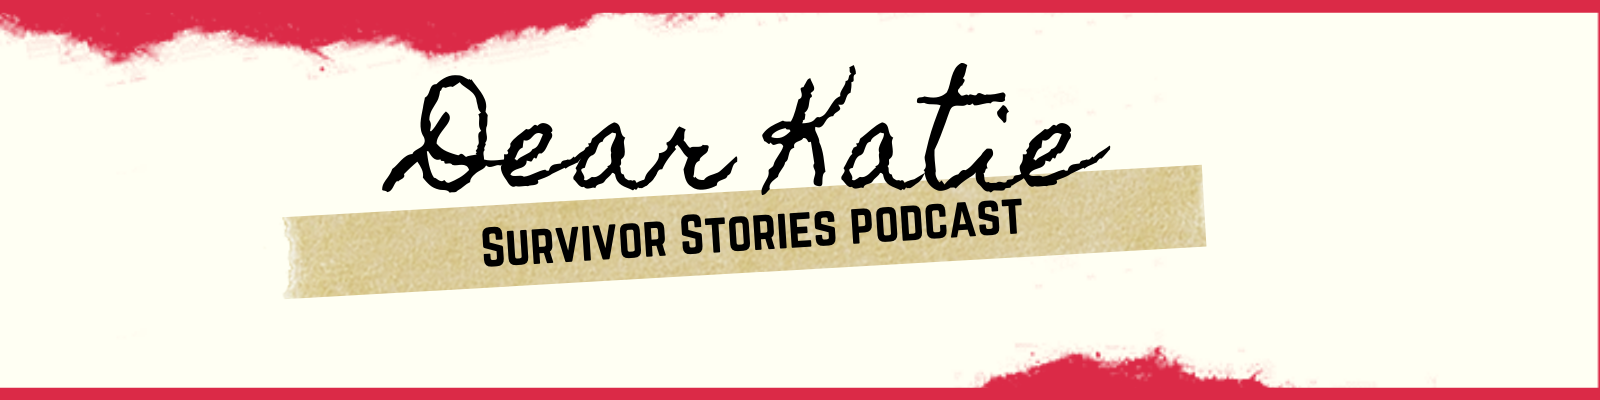 Dear Katie: Survivor Stories